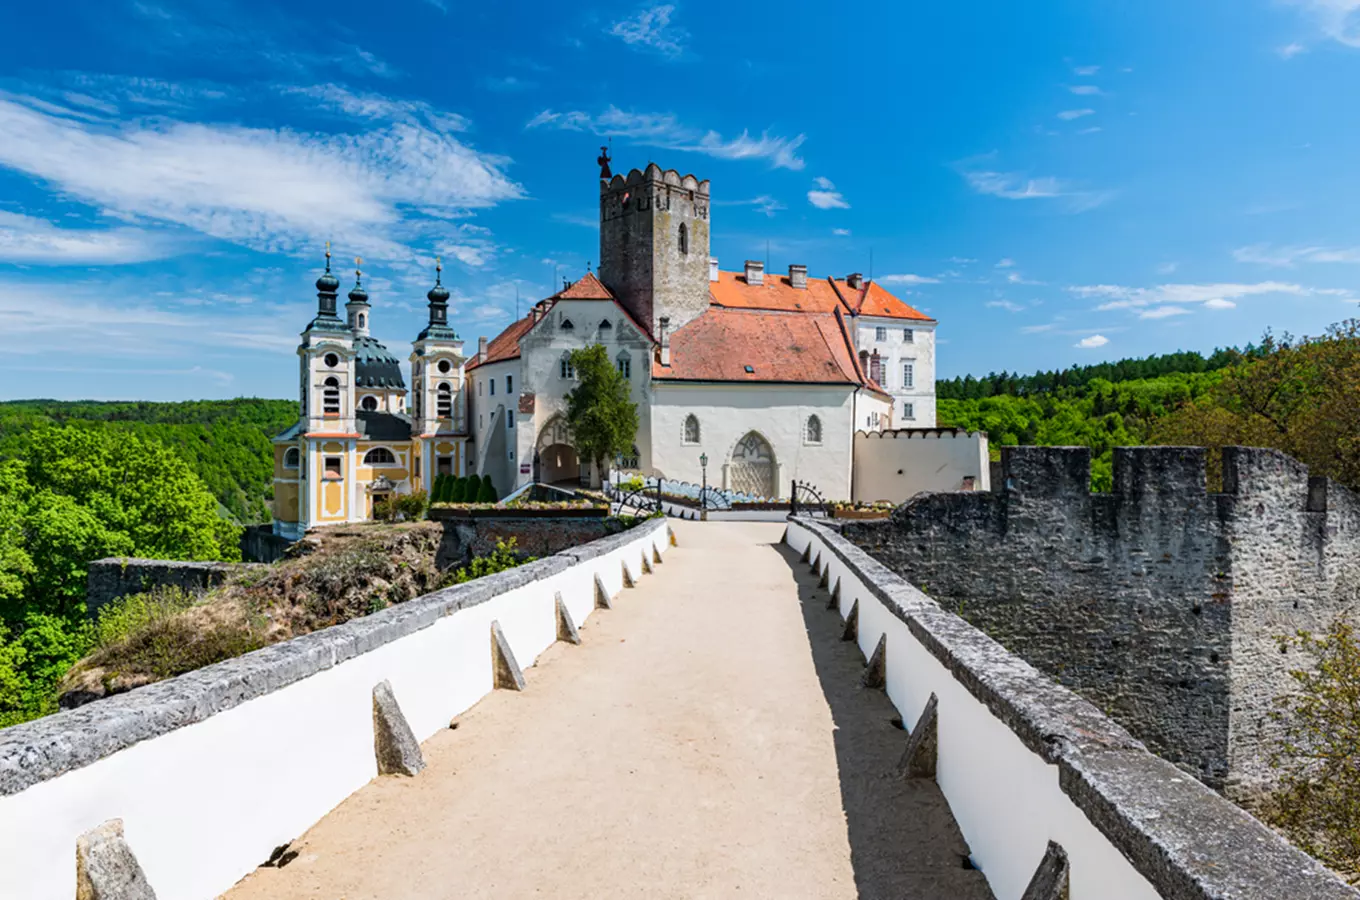 Po rekonstrukci strážní věž na zámku Vranov nad Dyjí nabídne pohledy na meandr řeky a městečko pod z